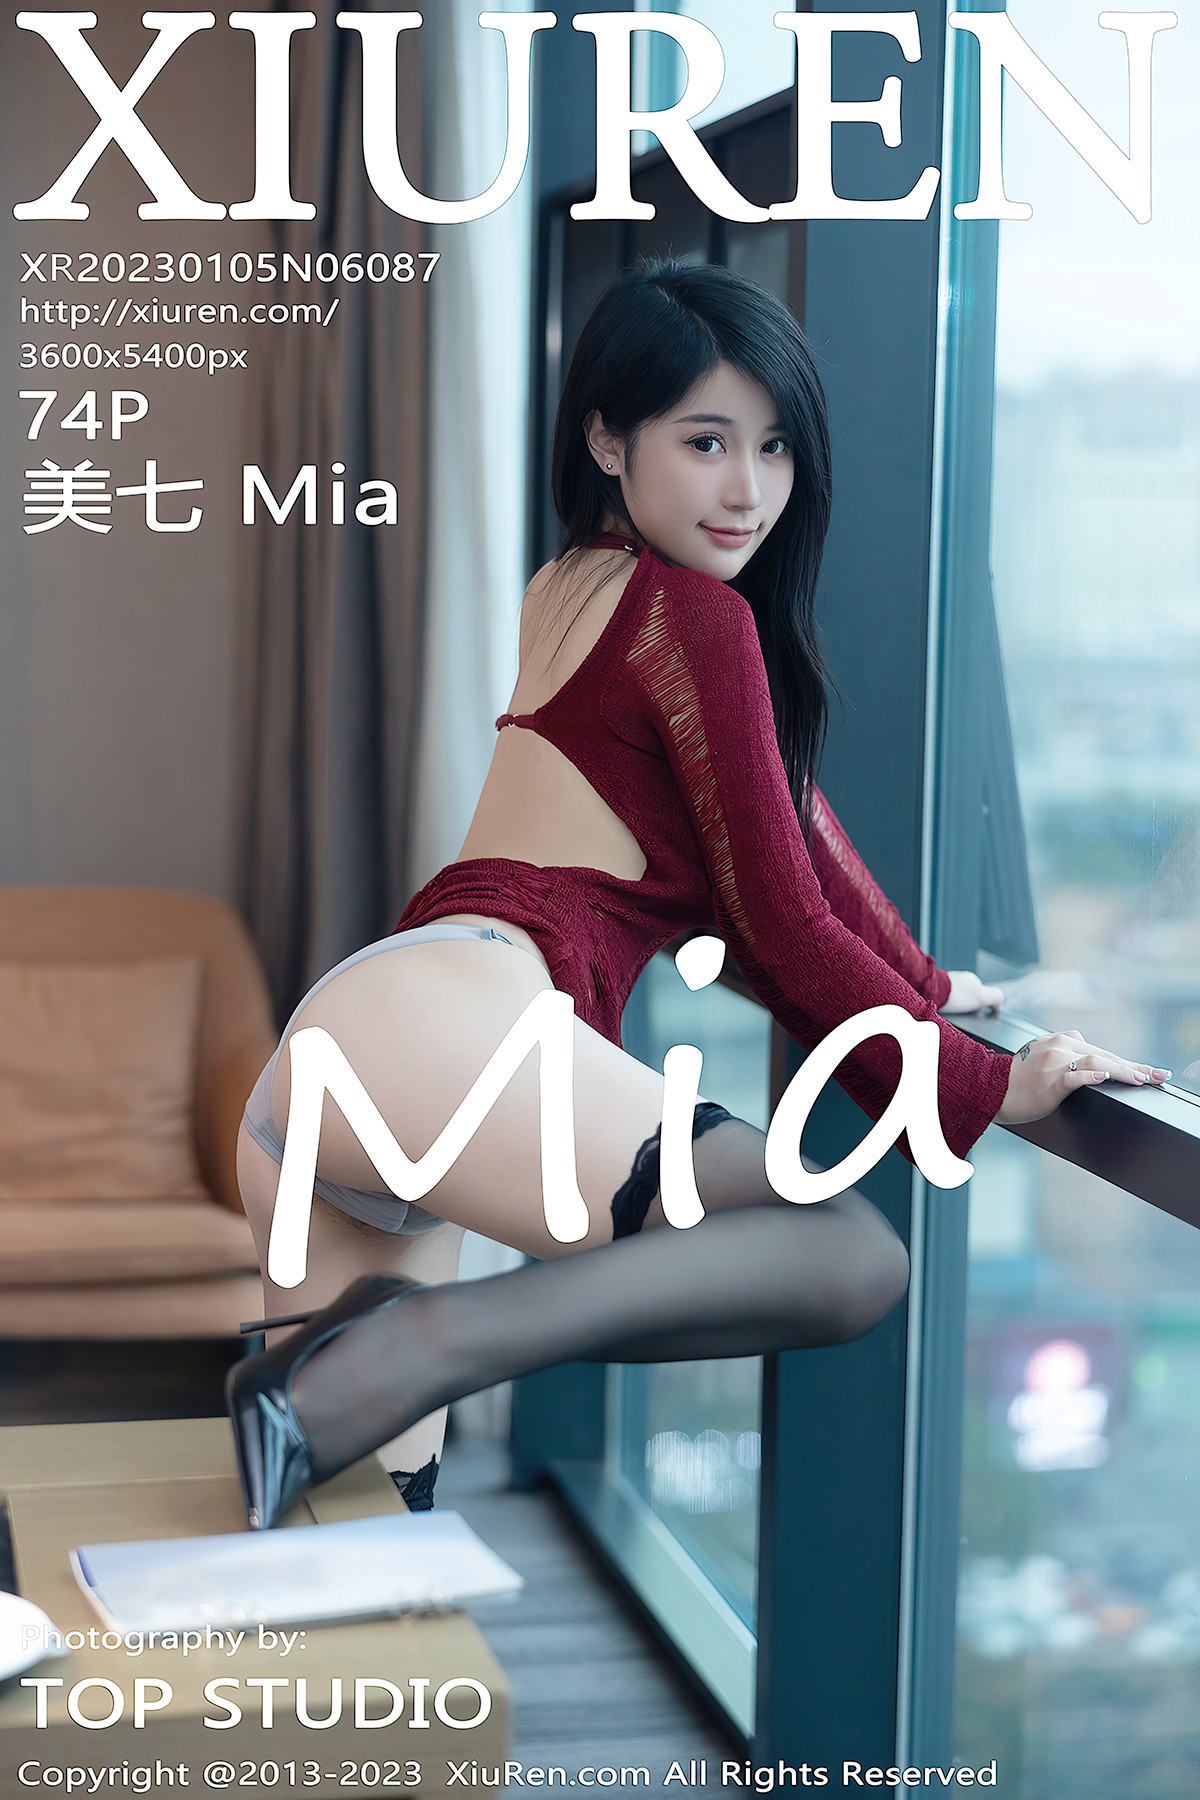 [XIUREN] No.6087 Mei Qi 美七Mia Cover Photo